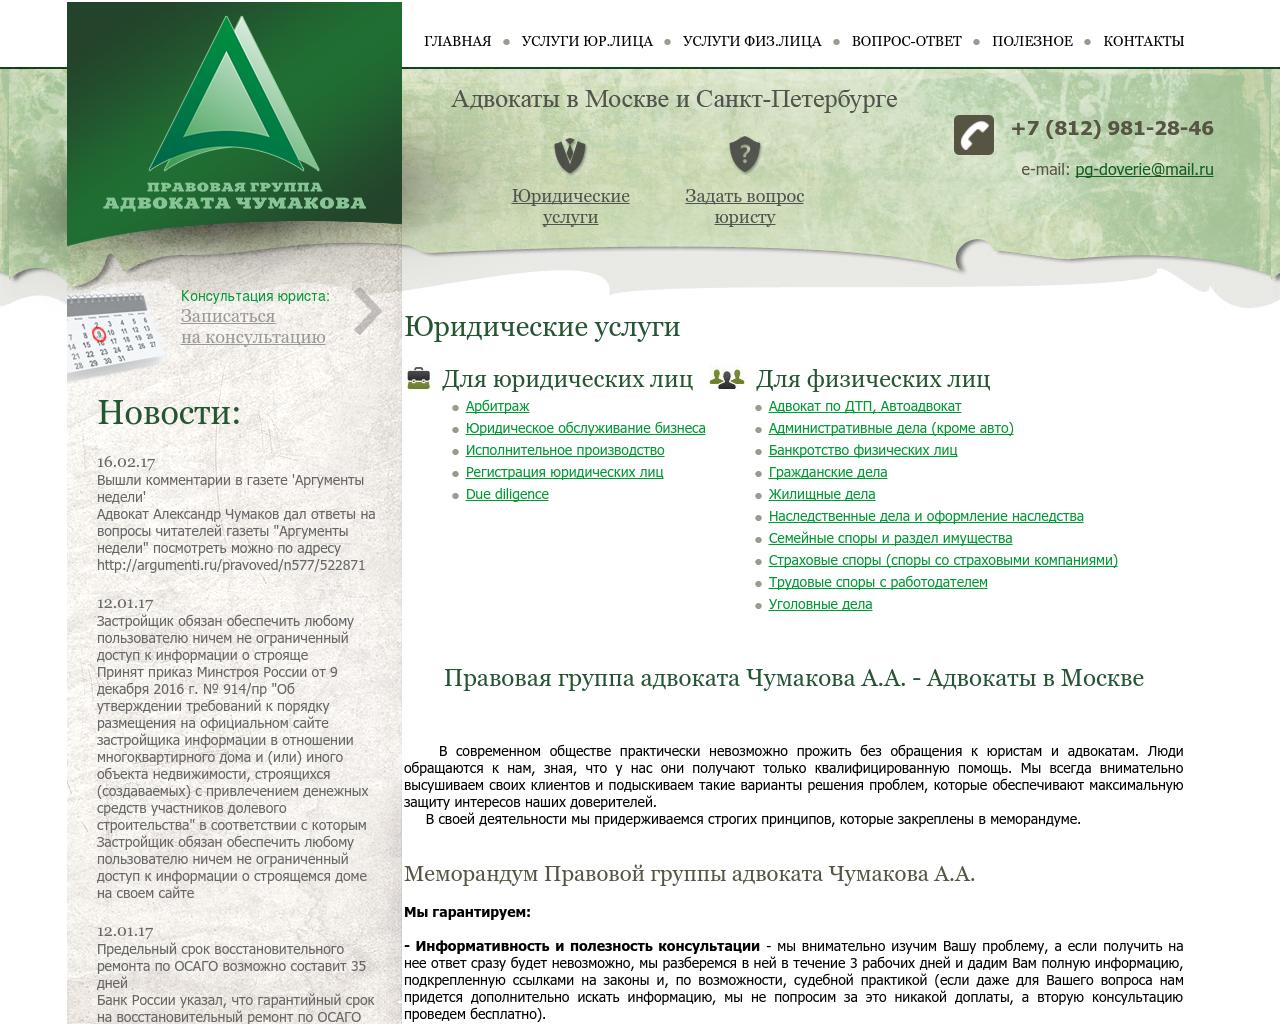 Изображение сайта pg-doverie.ru в разрешении 1280x1024